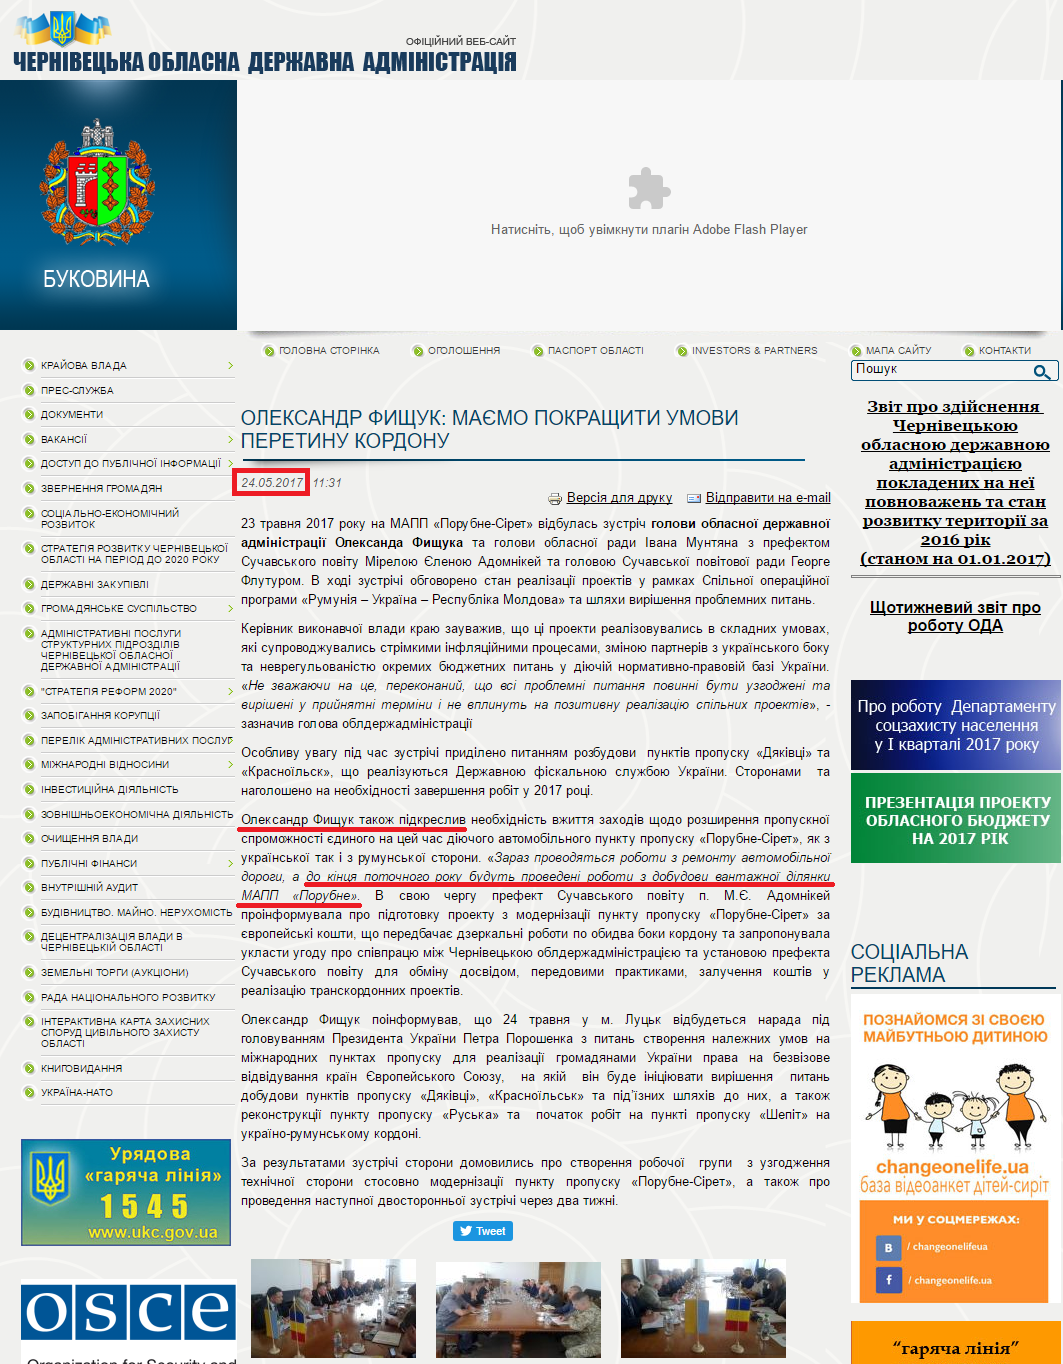 http://bukoda.gov.ua/news/oleksandr-fishchuk-maemo-pokrashchiti-umovi-peretinu-kordonu